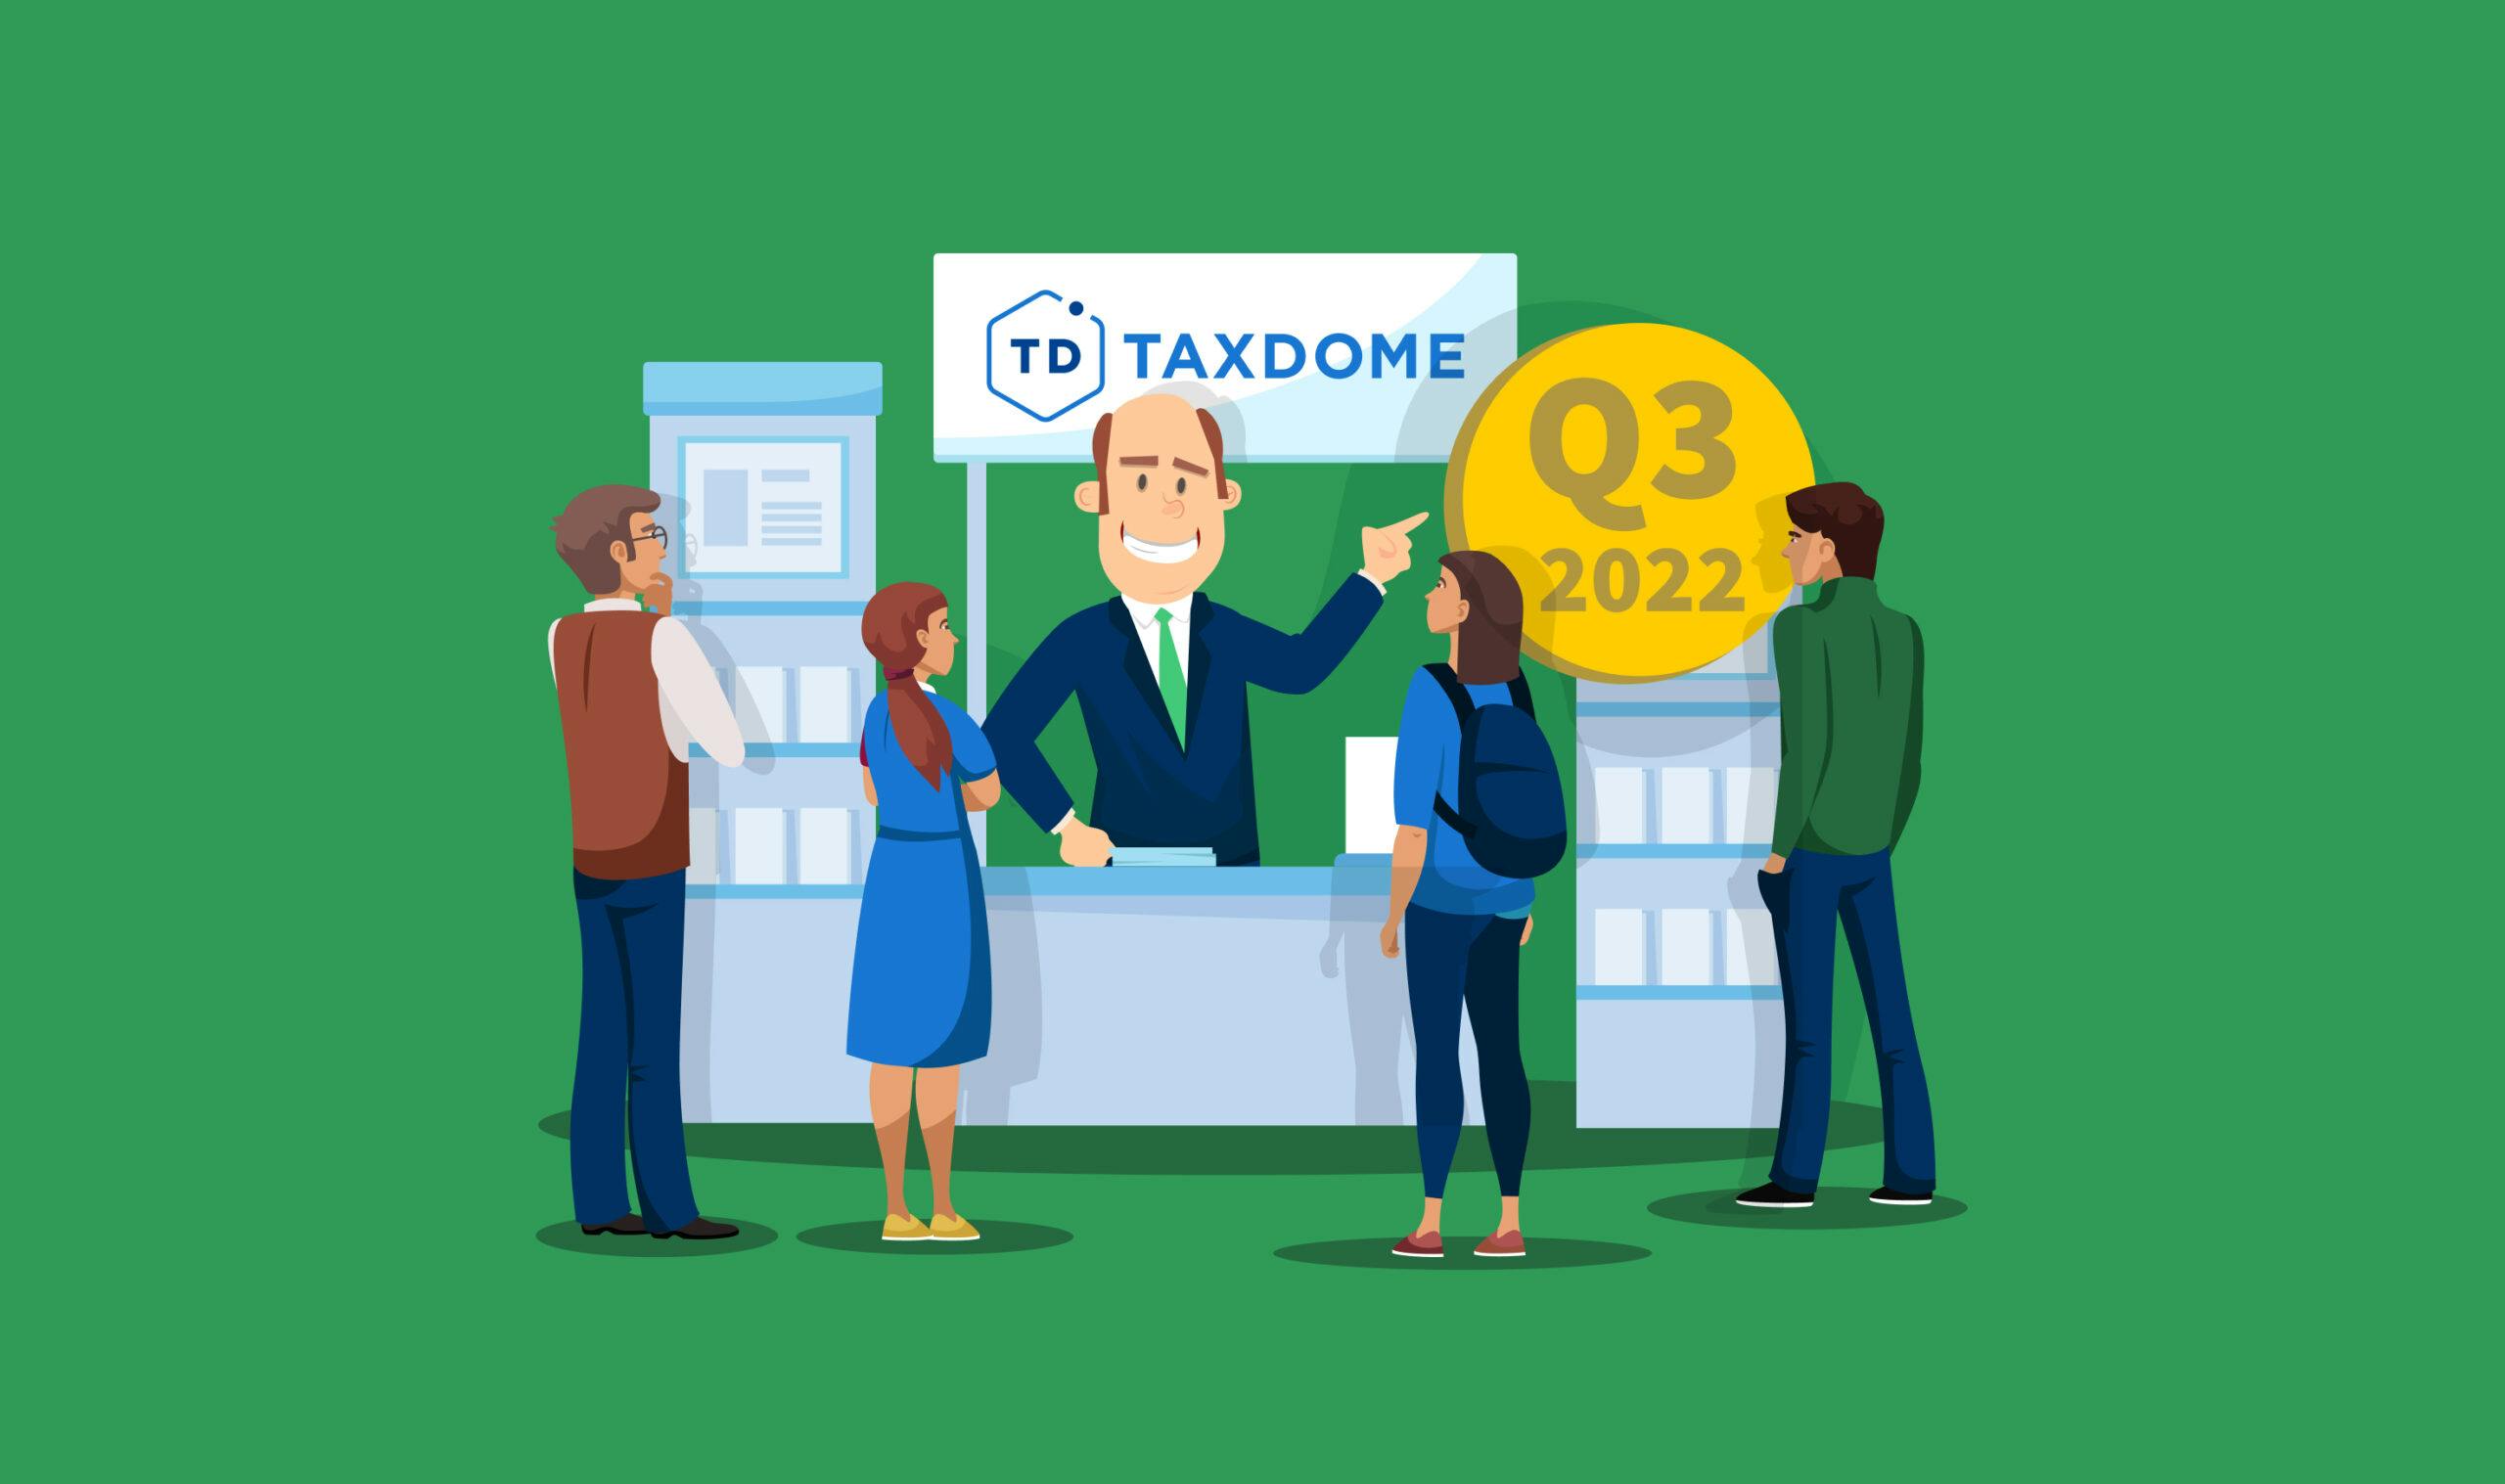 Eventos contables [edición del tercer trimestre de 2022]: ¡Conozca a TaxDome en persona!